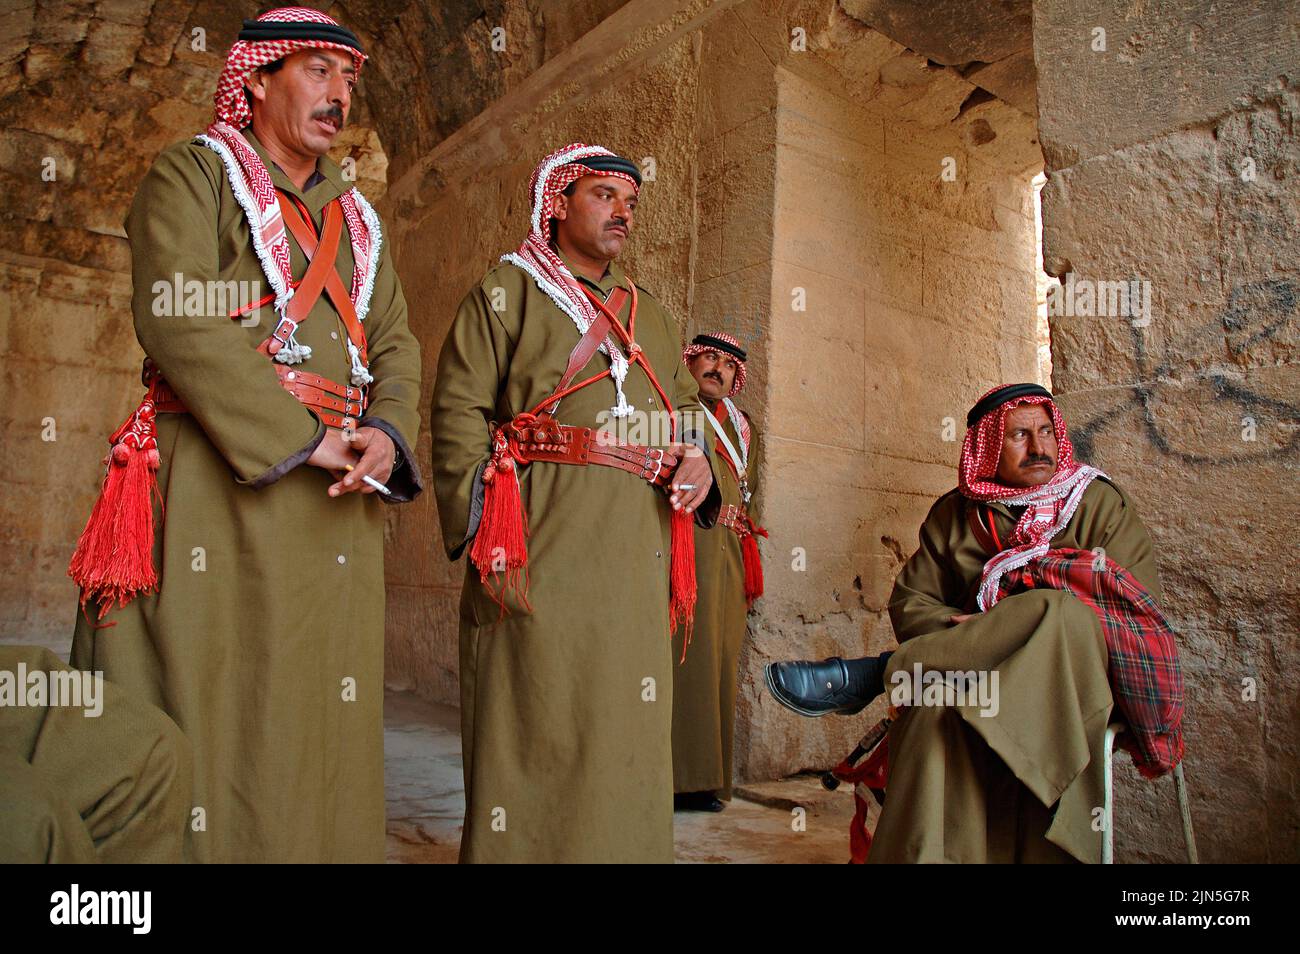 Jordania, sitio arqueológico de Jerash, músico vestido de la zona Foto de stock